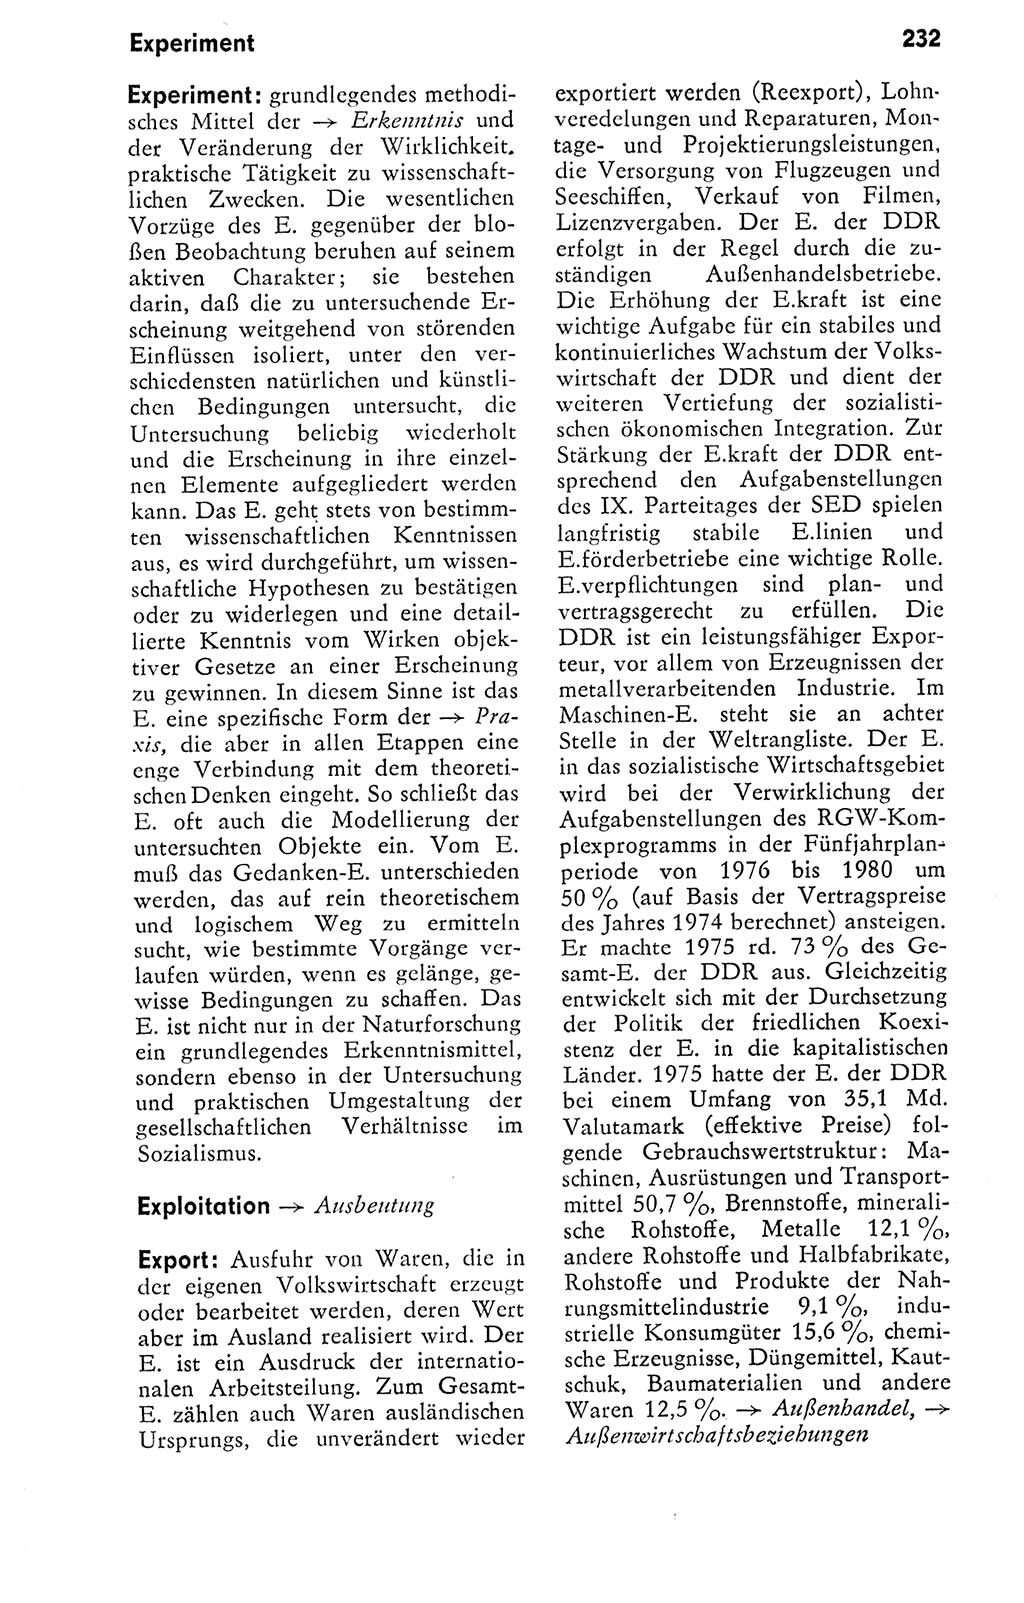 Kleines politisches Wörterbuch [Deutsche Demokratische Republik (DDR)] 1978, Seite 232 (Kl. pol. Wb. DDR 1978, S. 232)